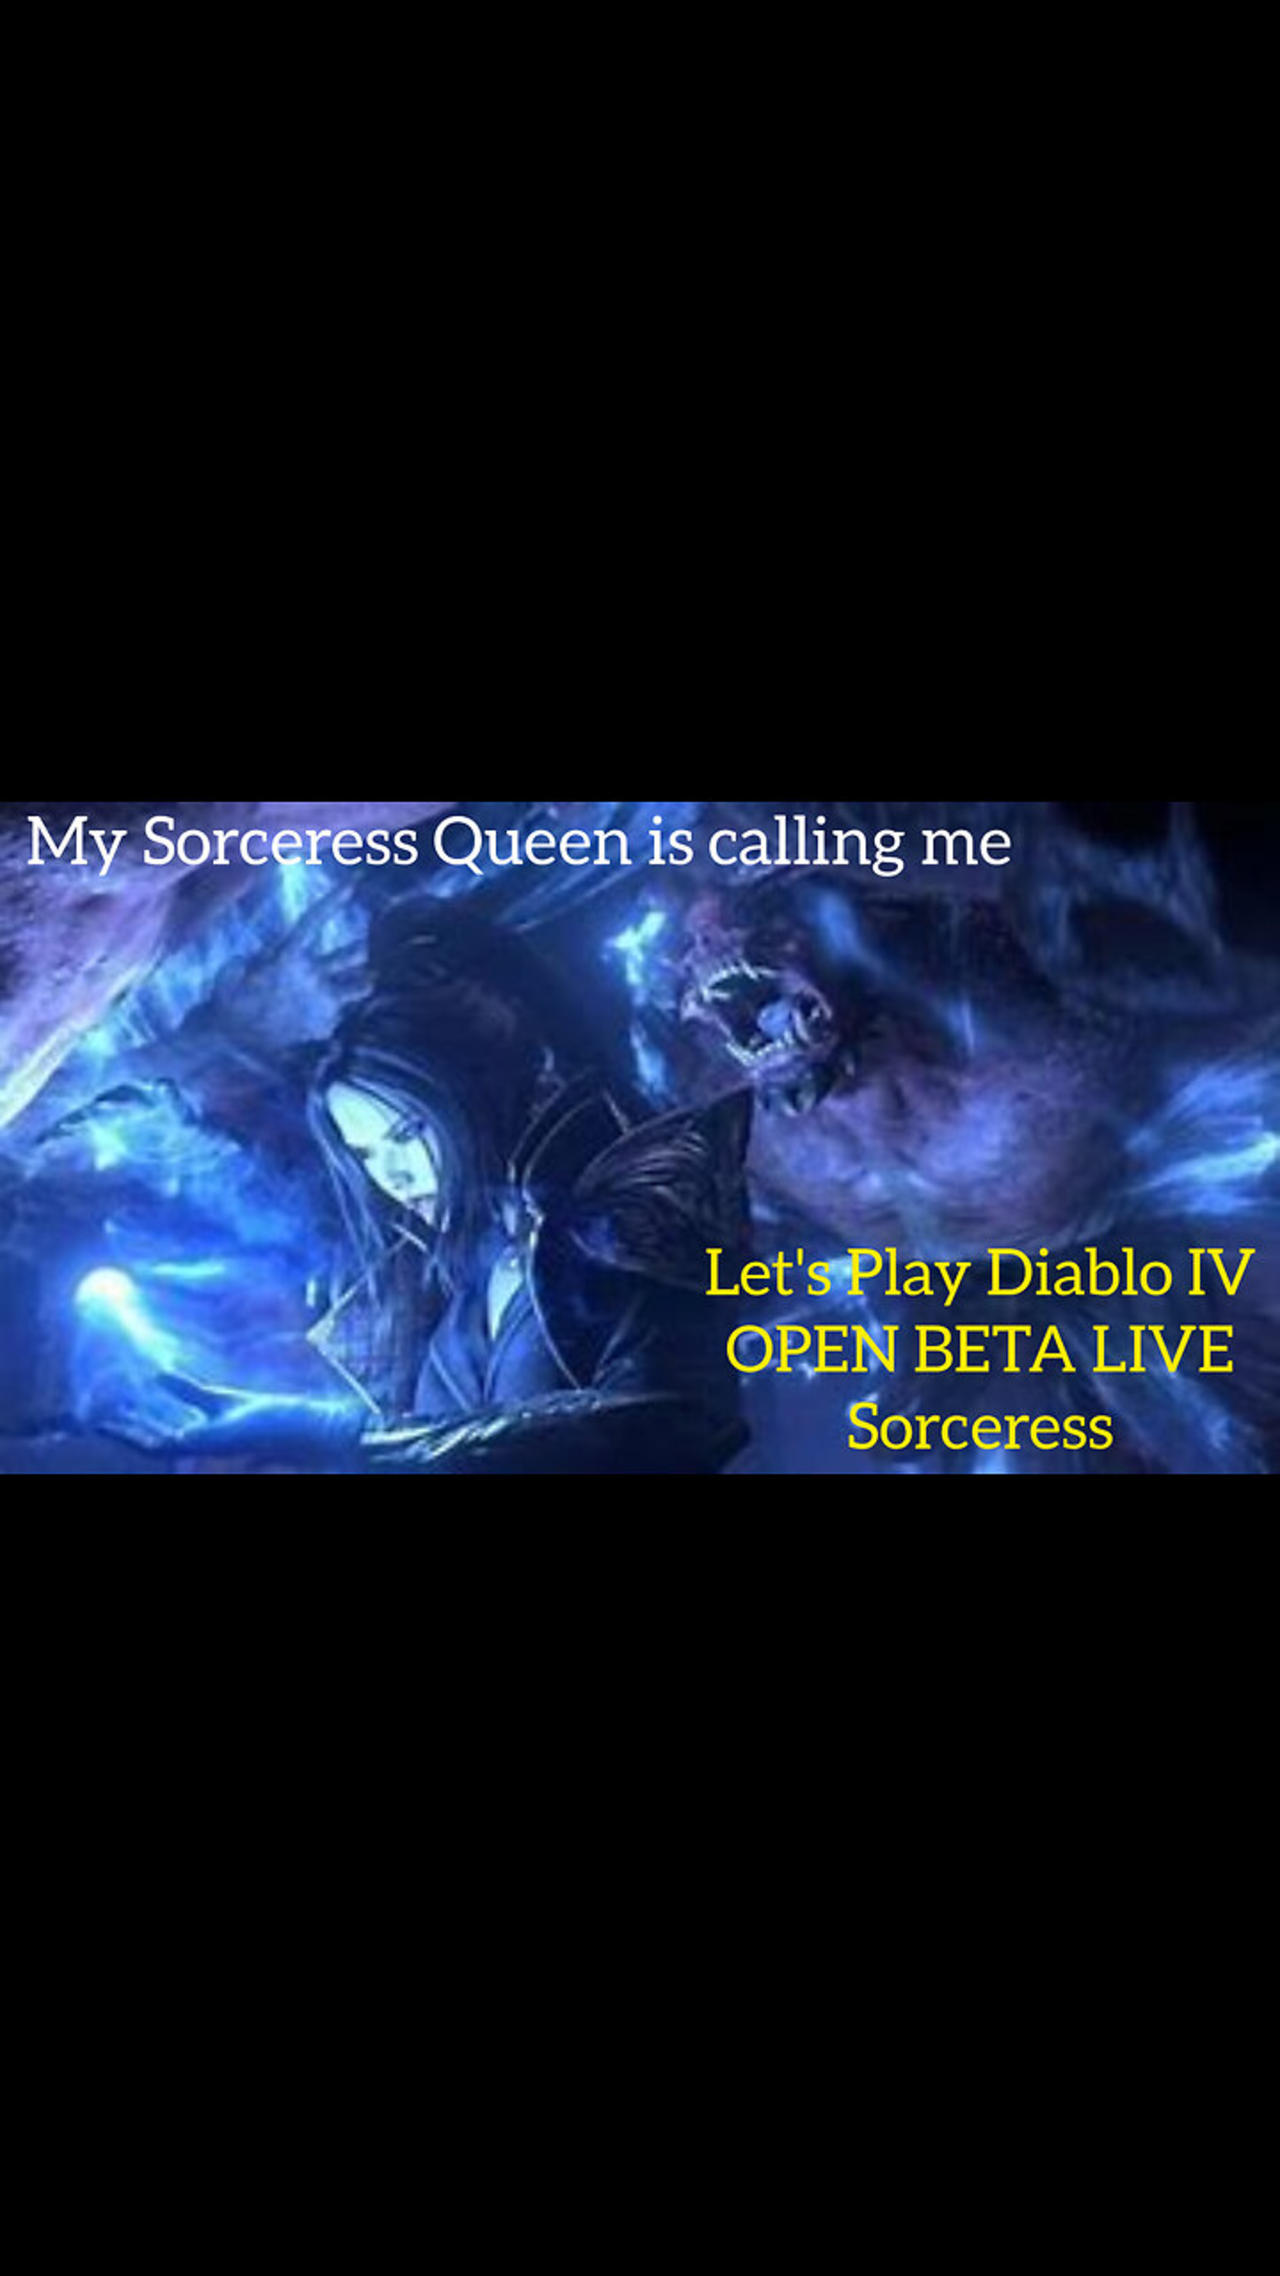 Let's Play Diablo IV Open Beta Live Part 7 - My Sorceress Queen is calling me